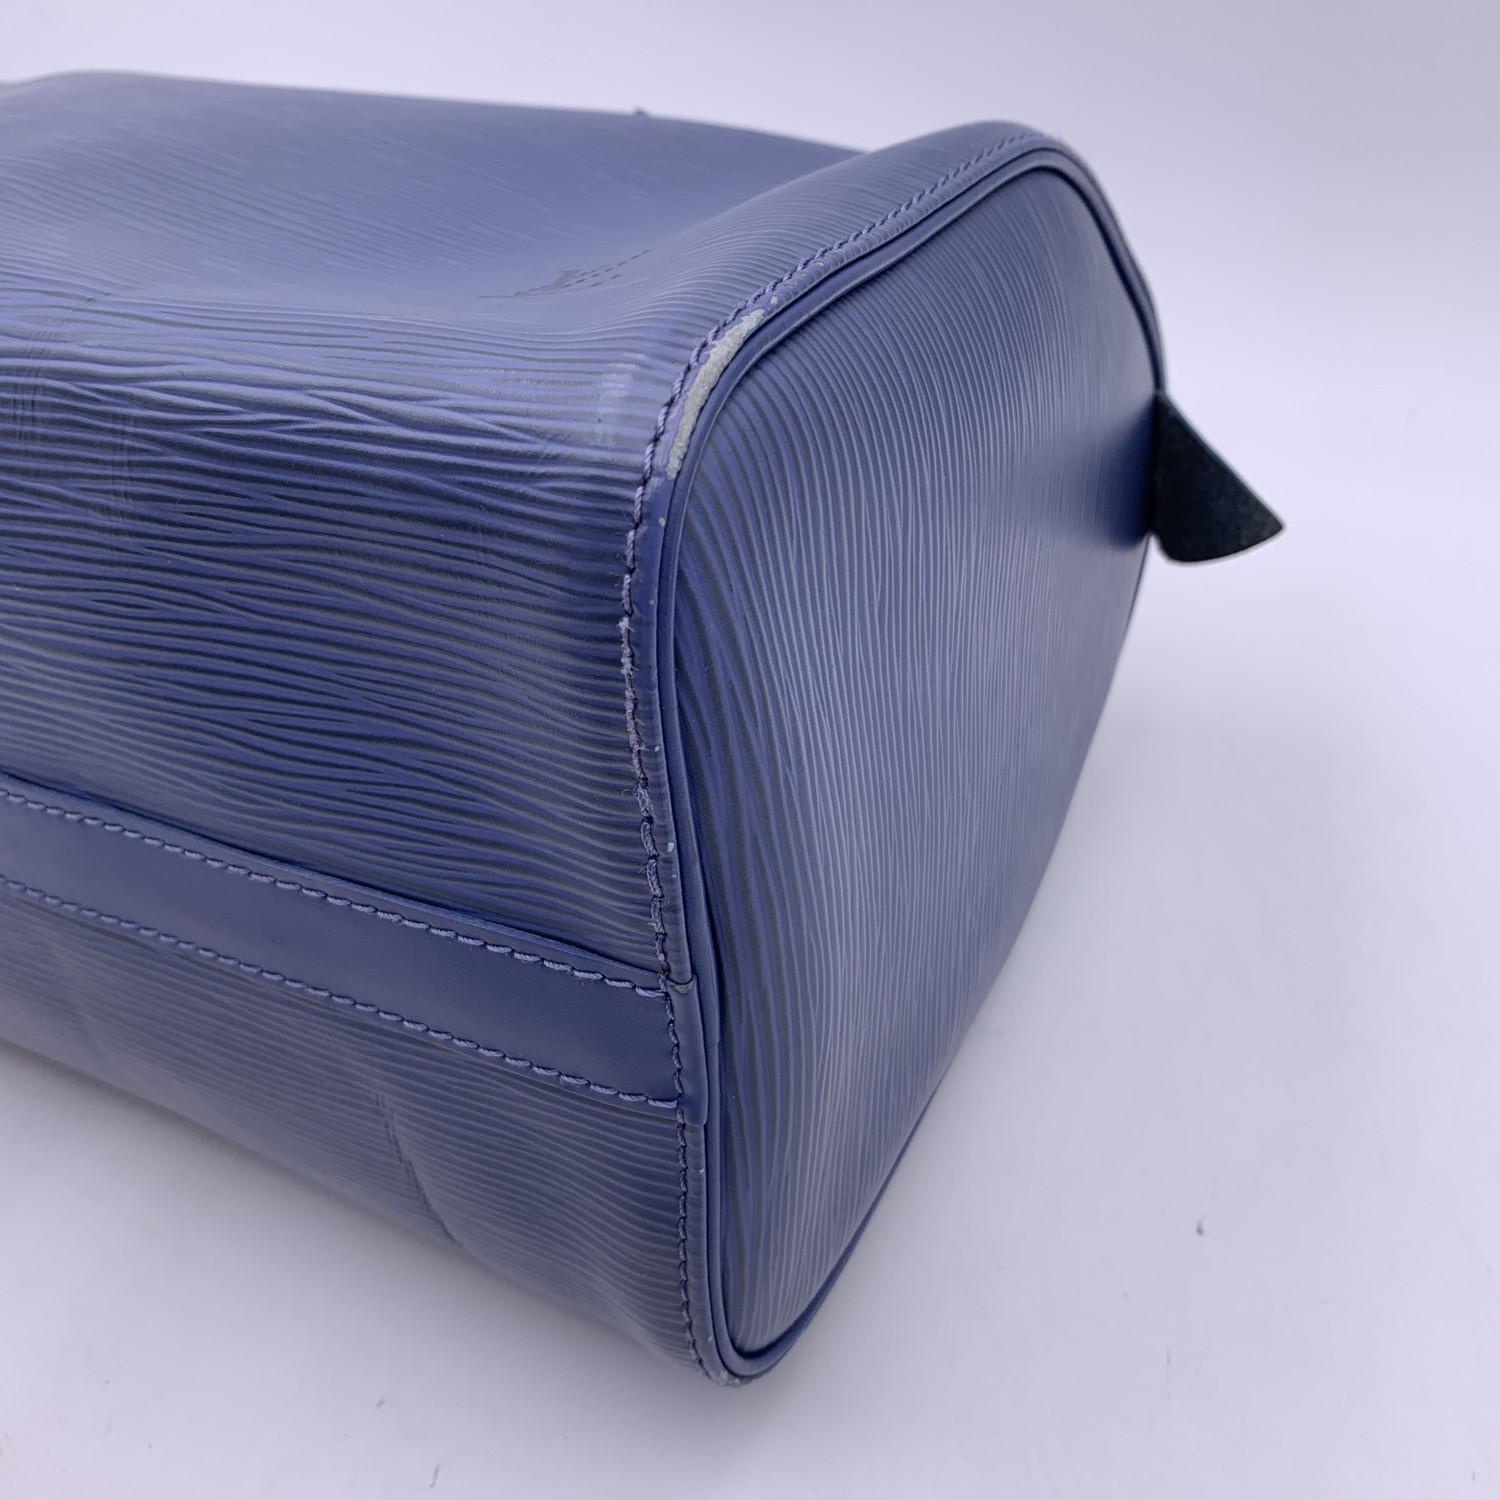 Louis Vuitton Toledo Blue Epi Leather Speedy 25 Boston Bag Handbag 10